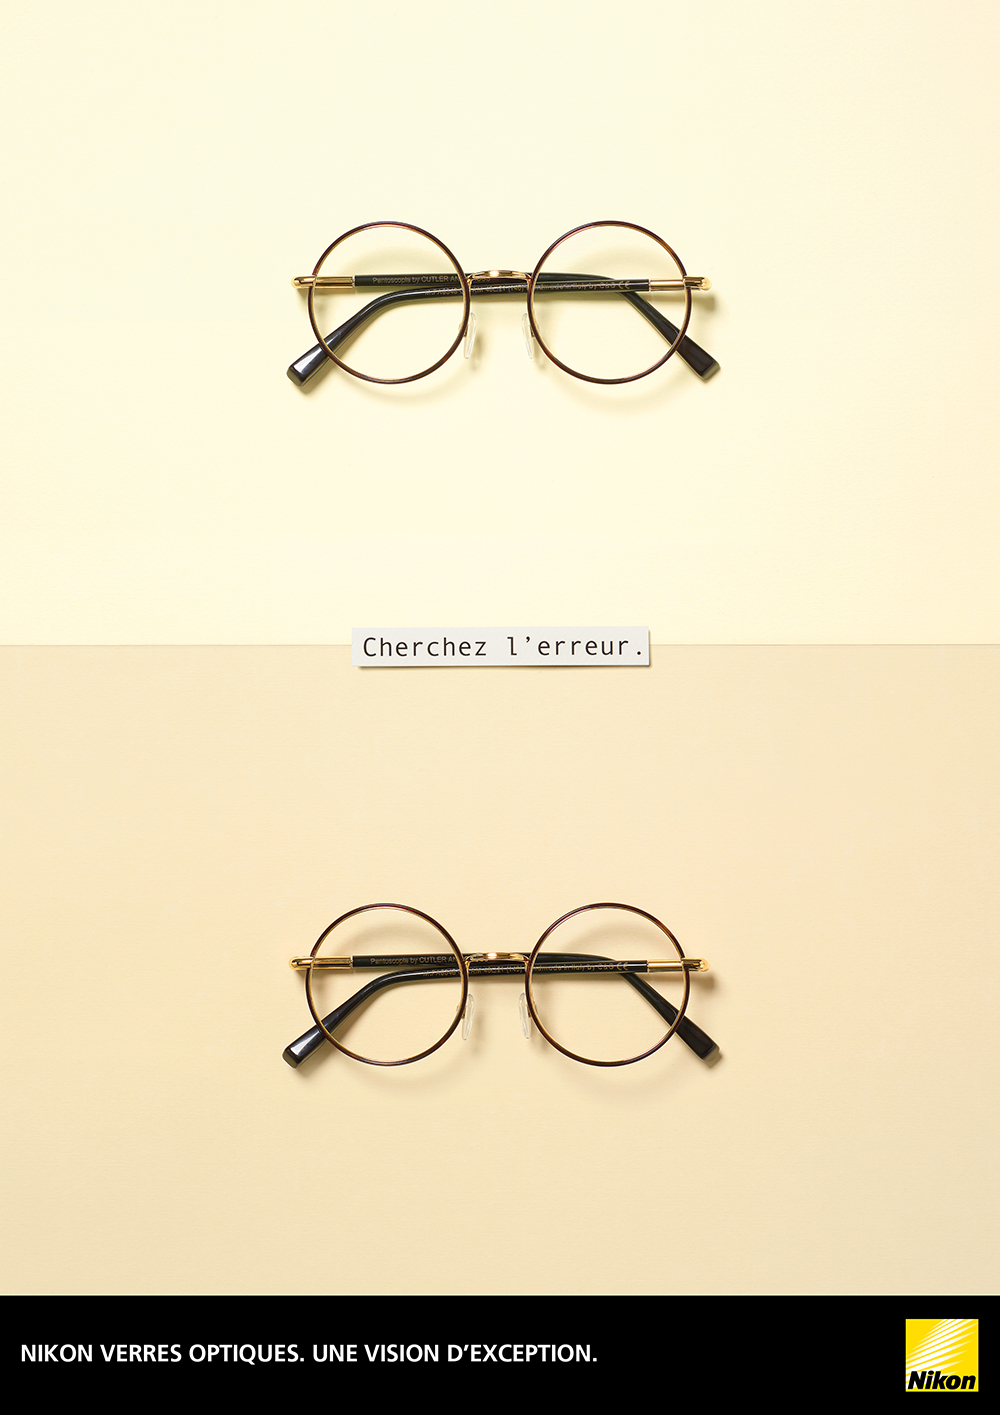 nikon-verres-optiques-publicite-print-affiche-optical-jeux-de-mots-vue-vision-agence-altmann-pacreau-5